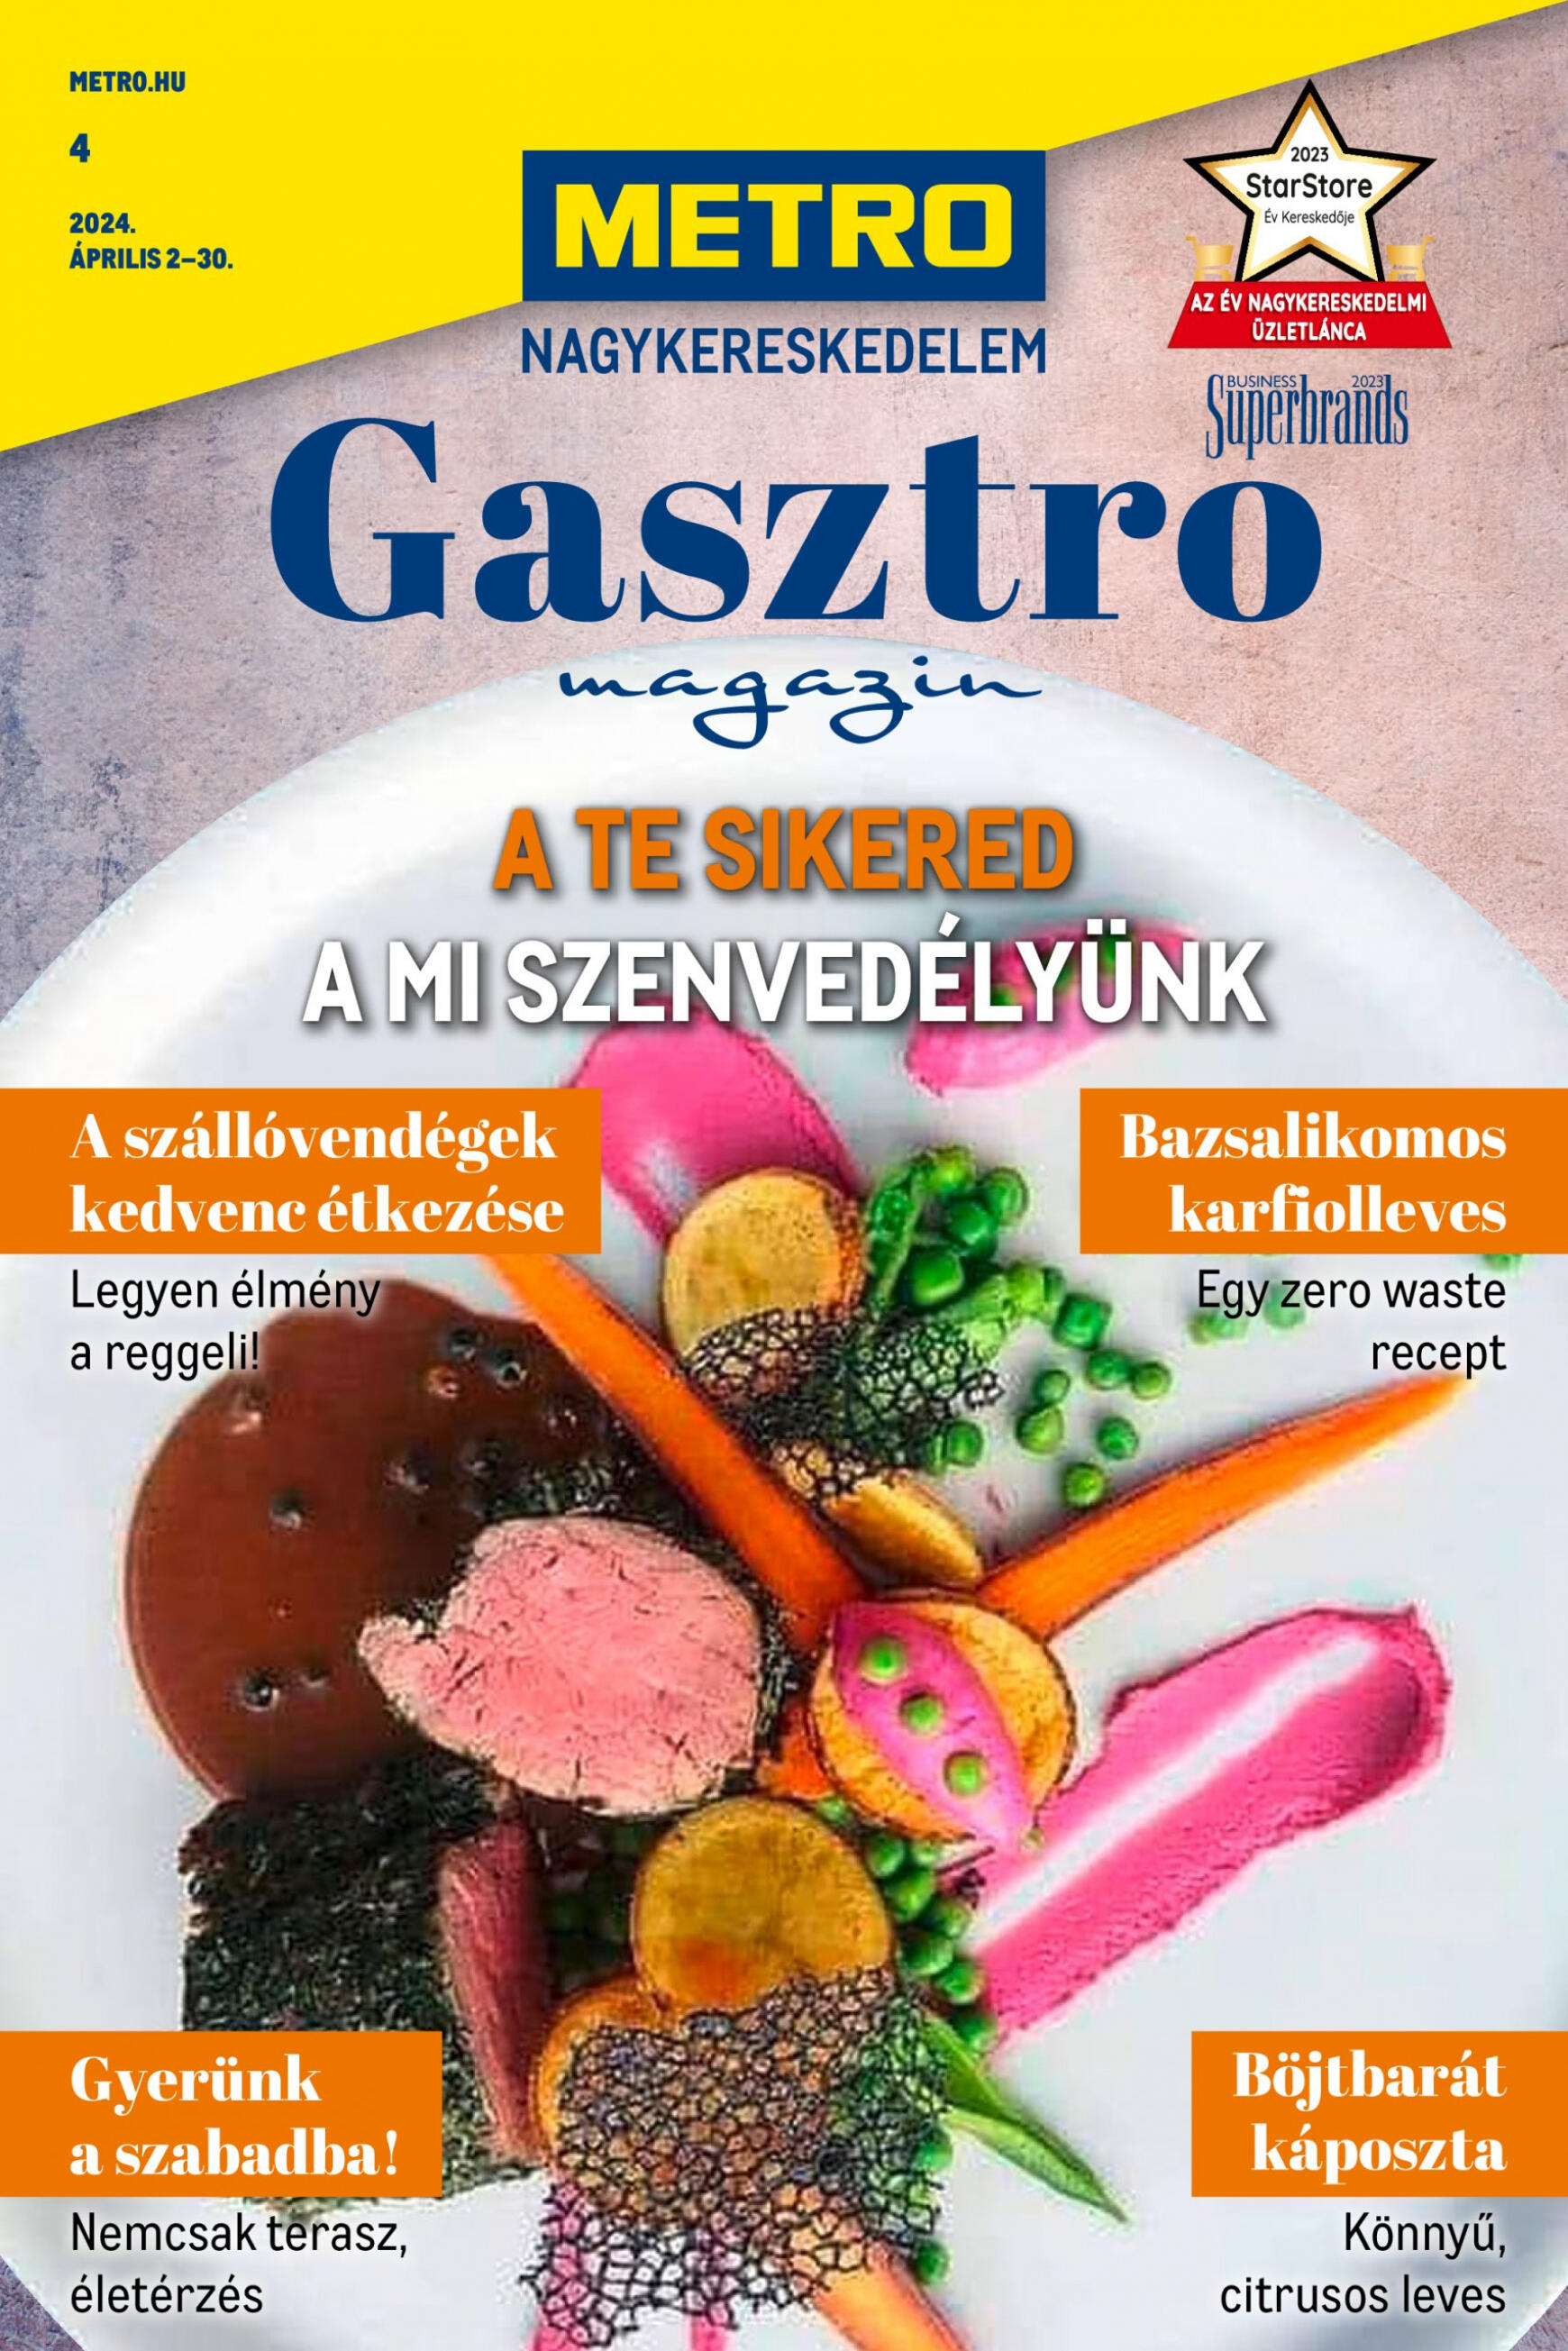 metro - Aktuális újság Metro - Gasztro magazin 04.02. - 04.30. - page: 1